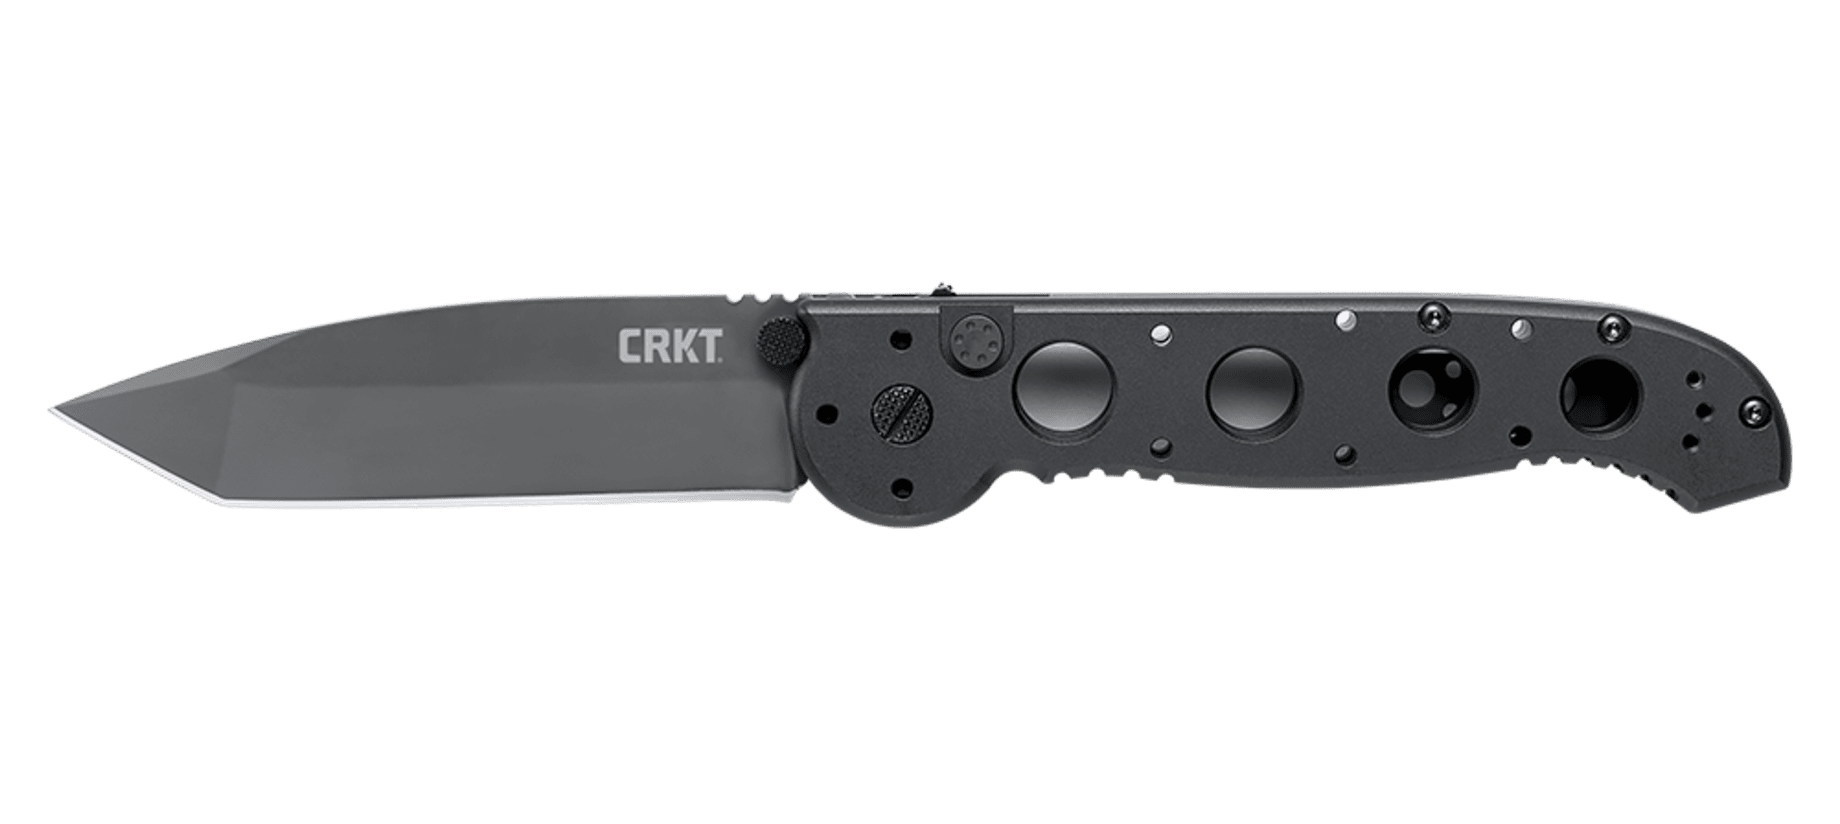 Складной нож CRKT M16®-04A Automatic, сталь CPM 154, рукоять алюминиевый сплав